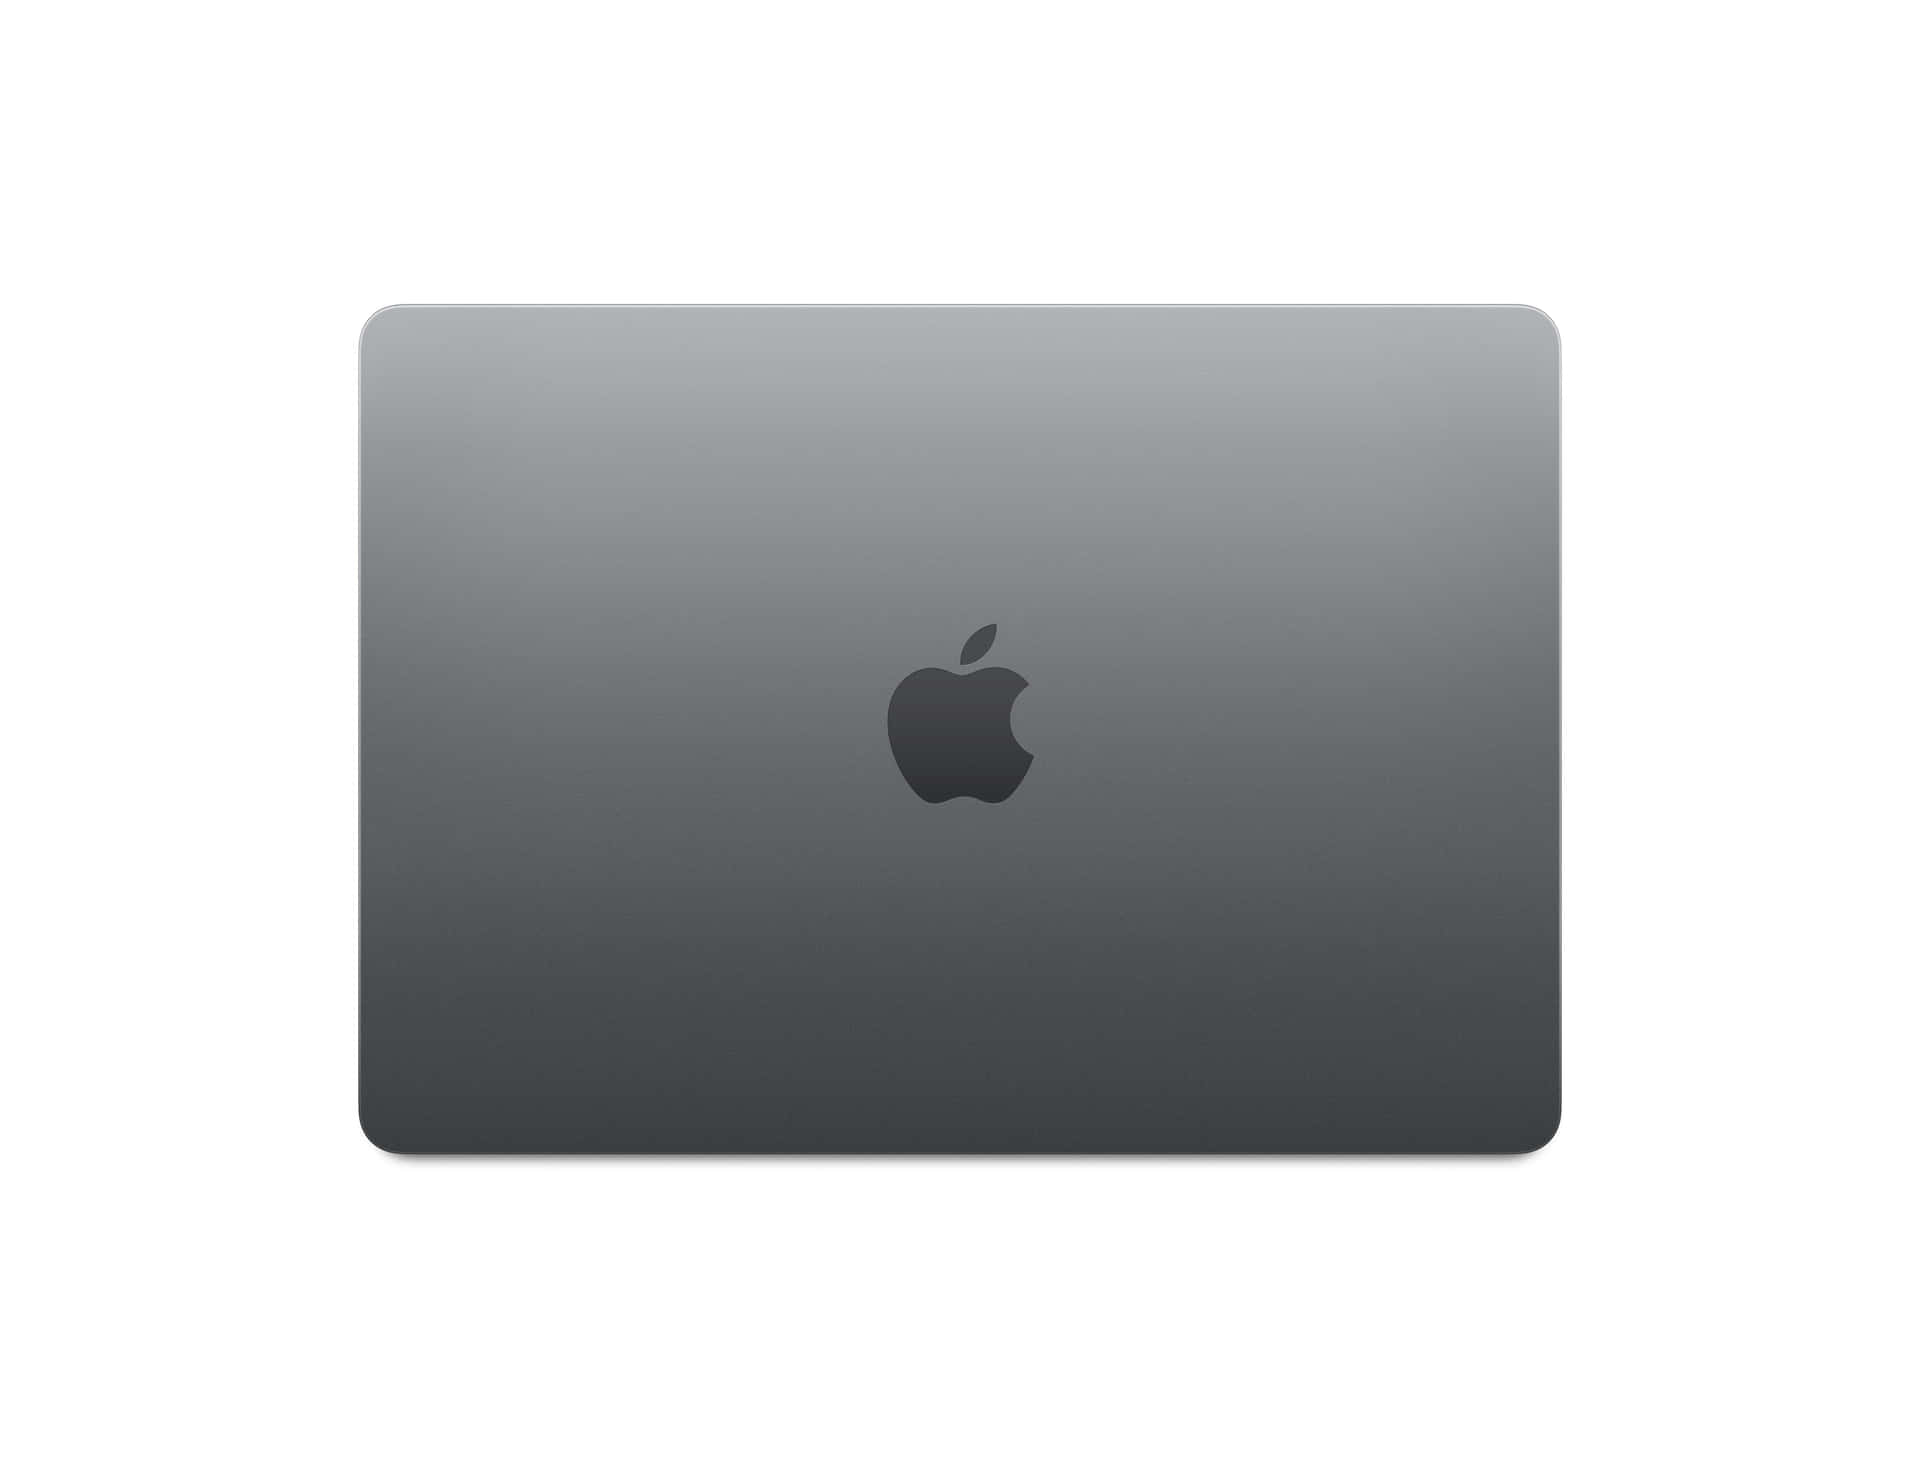 Prepáratepara Desatar Tu Productividad Laboral Con El Elegante Y Estilizado Black Macbook. Fondo de pantalla